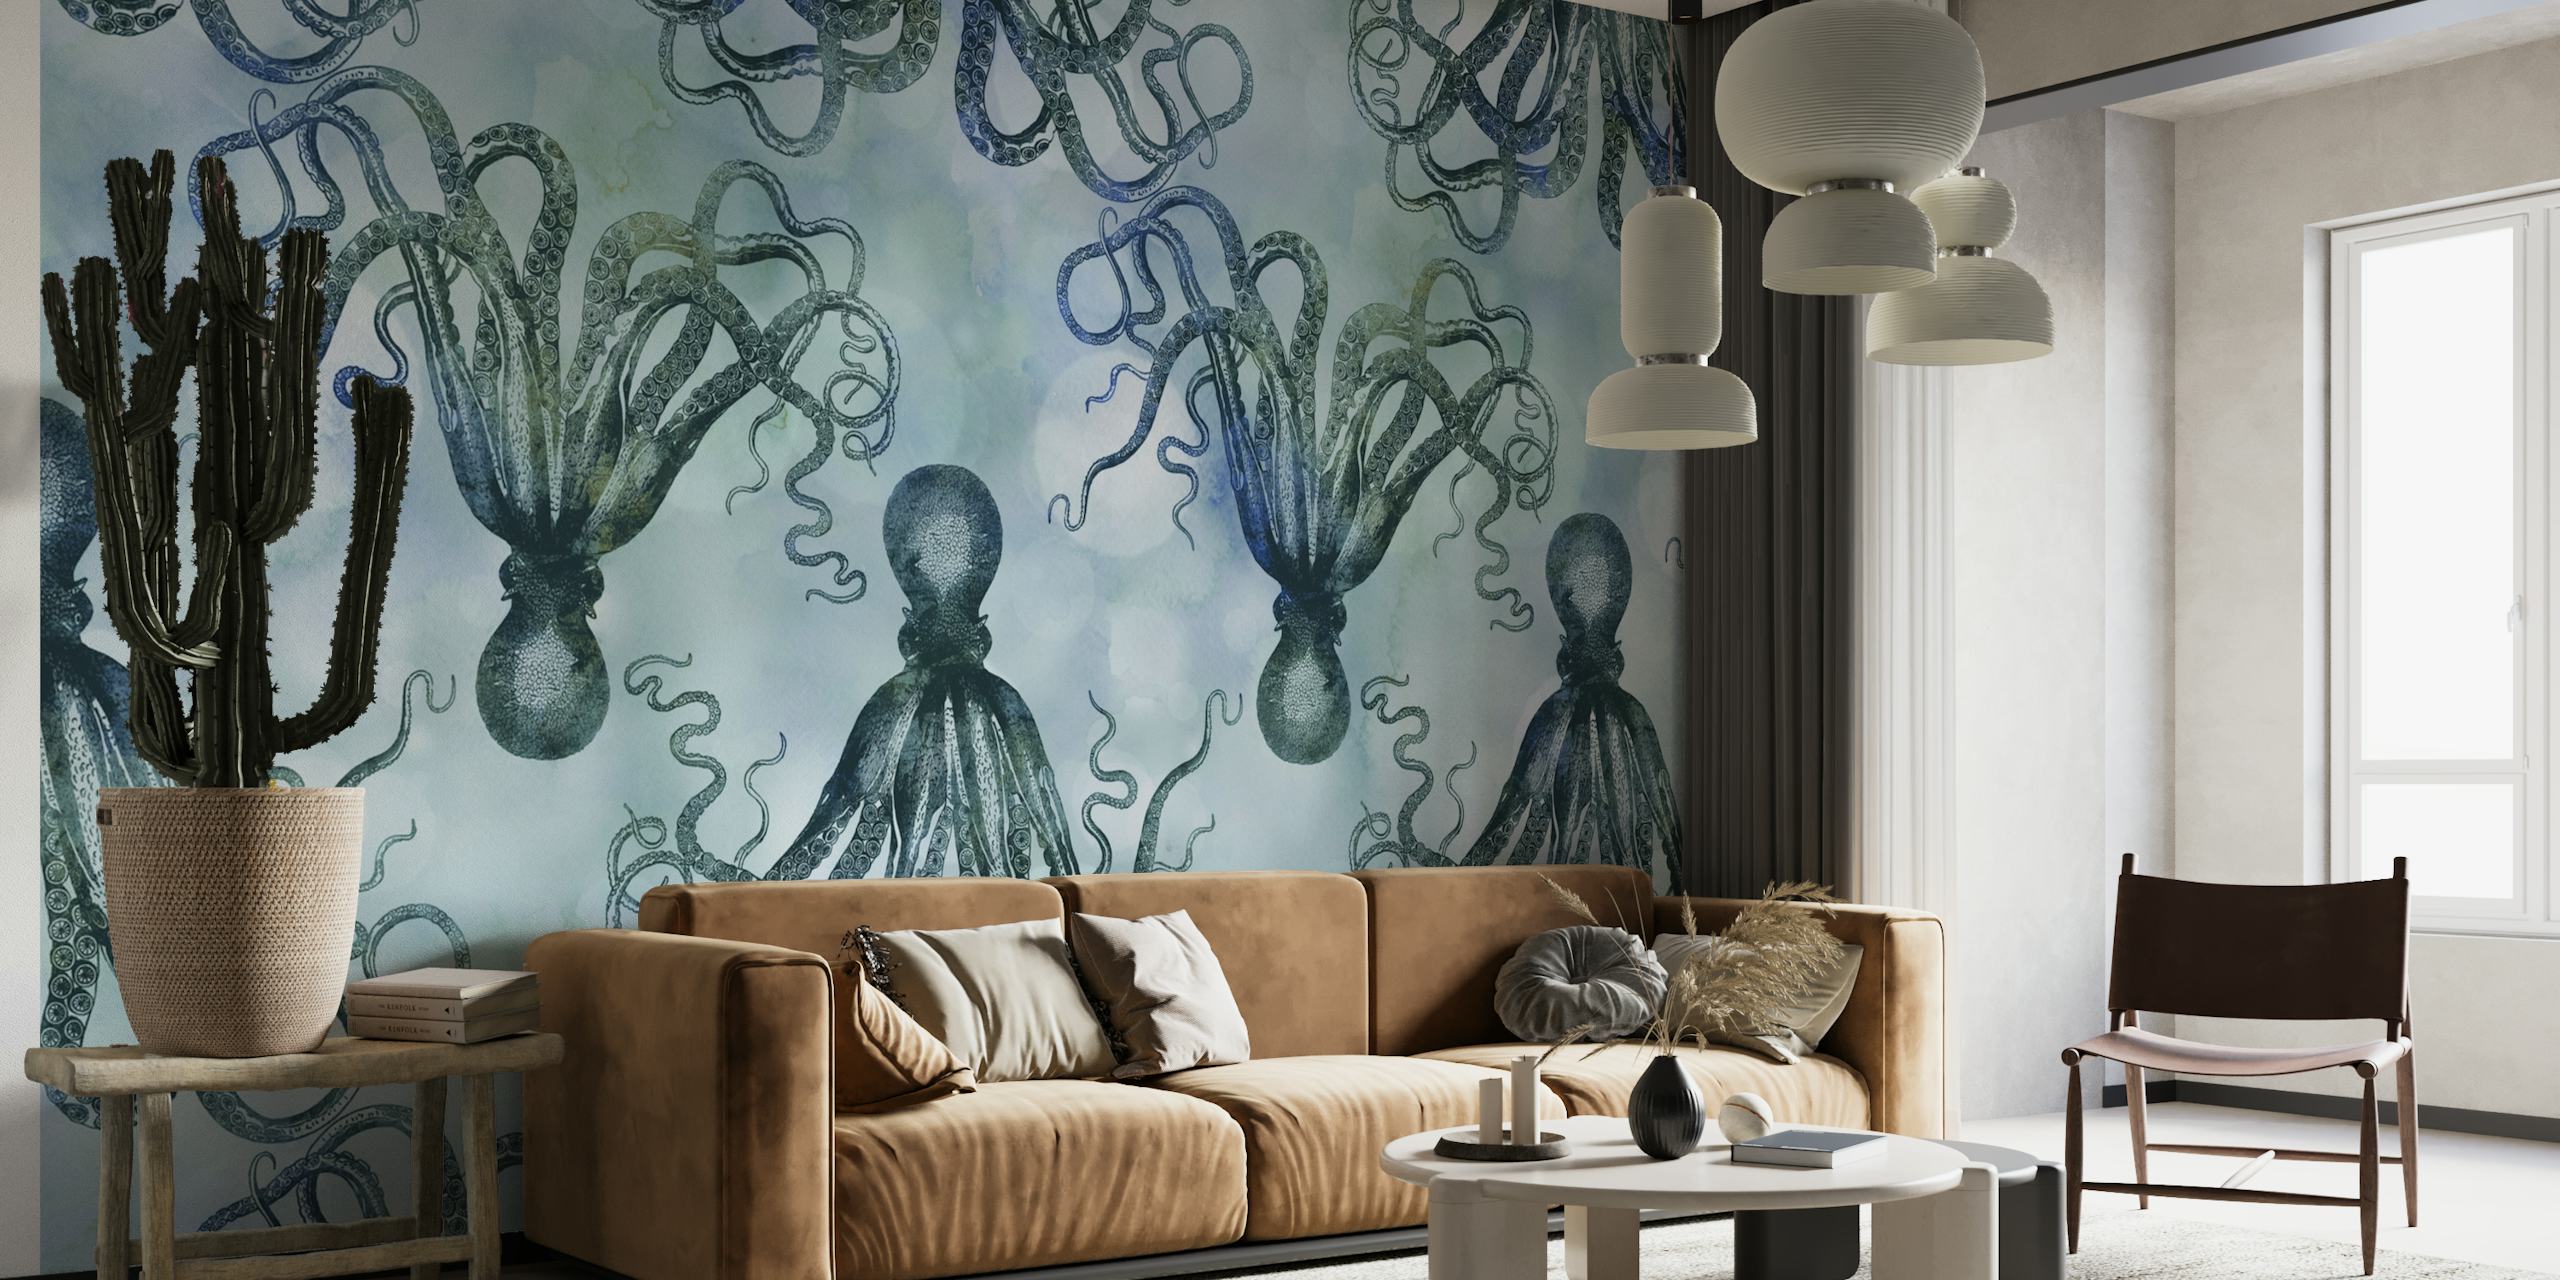 Sierlijke octopussen in blauwtinten die rustig ronddrijven op een fotobehang